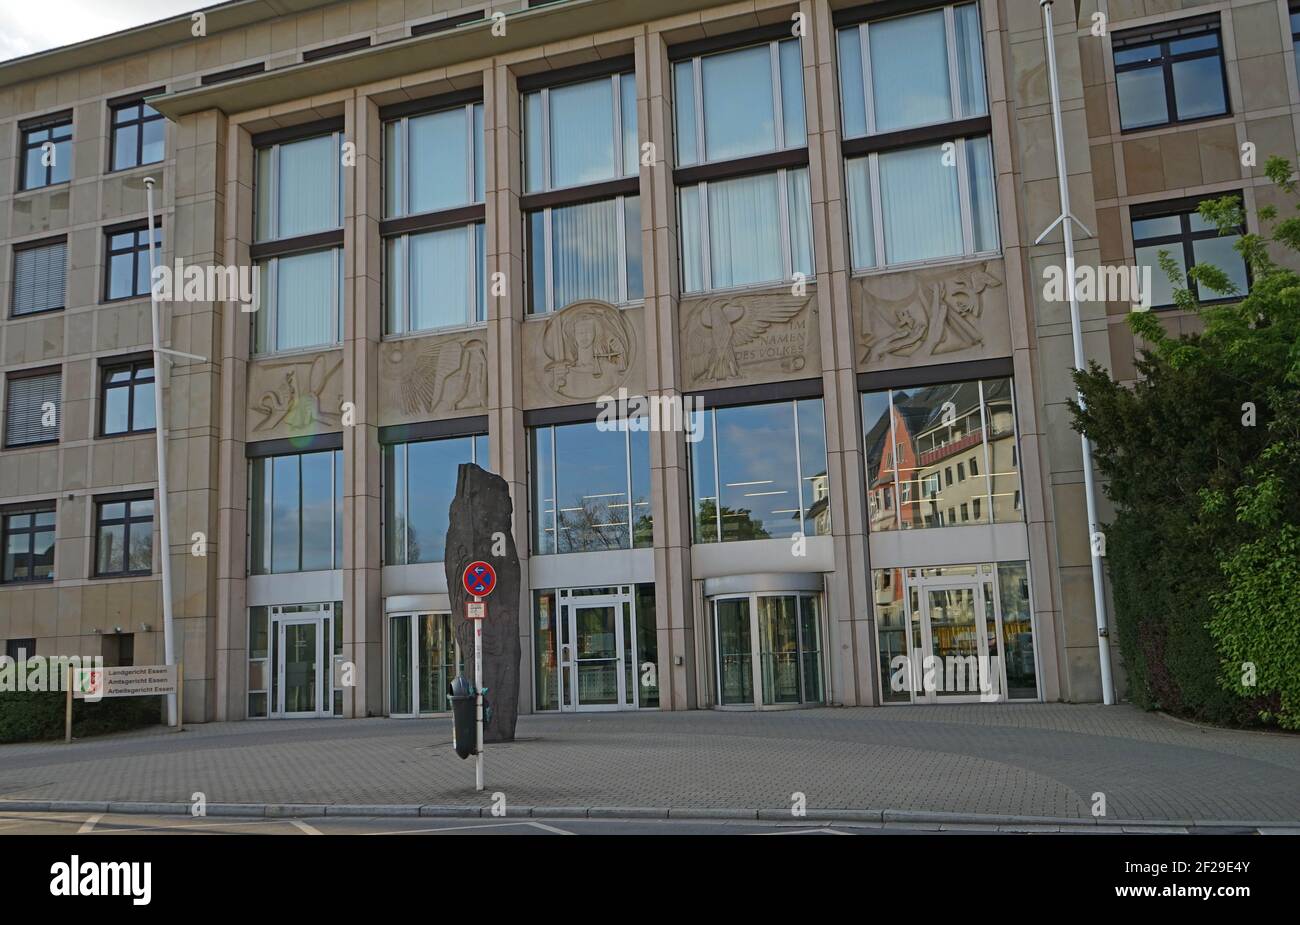 Gerichtsgebäude, Amtsgericht Essen, am Haumannplatz, Essen, NRW, Europe, April 2020 Stock Photo